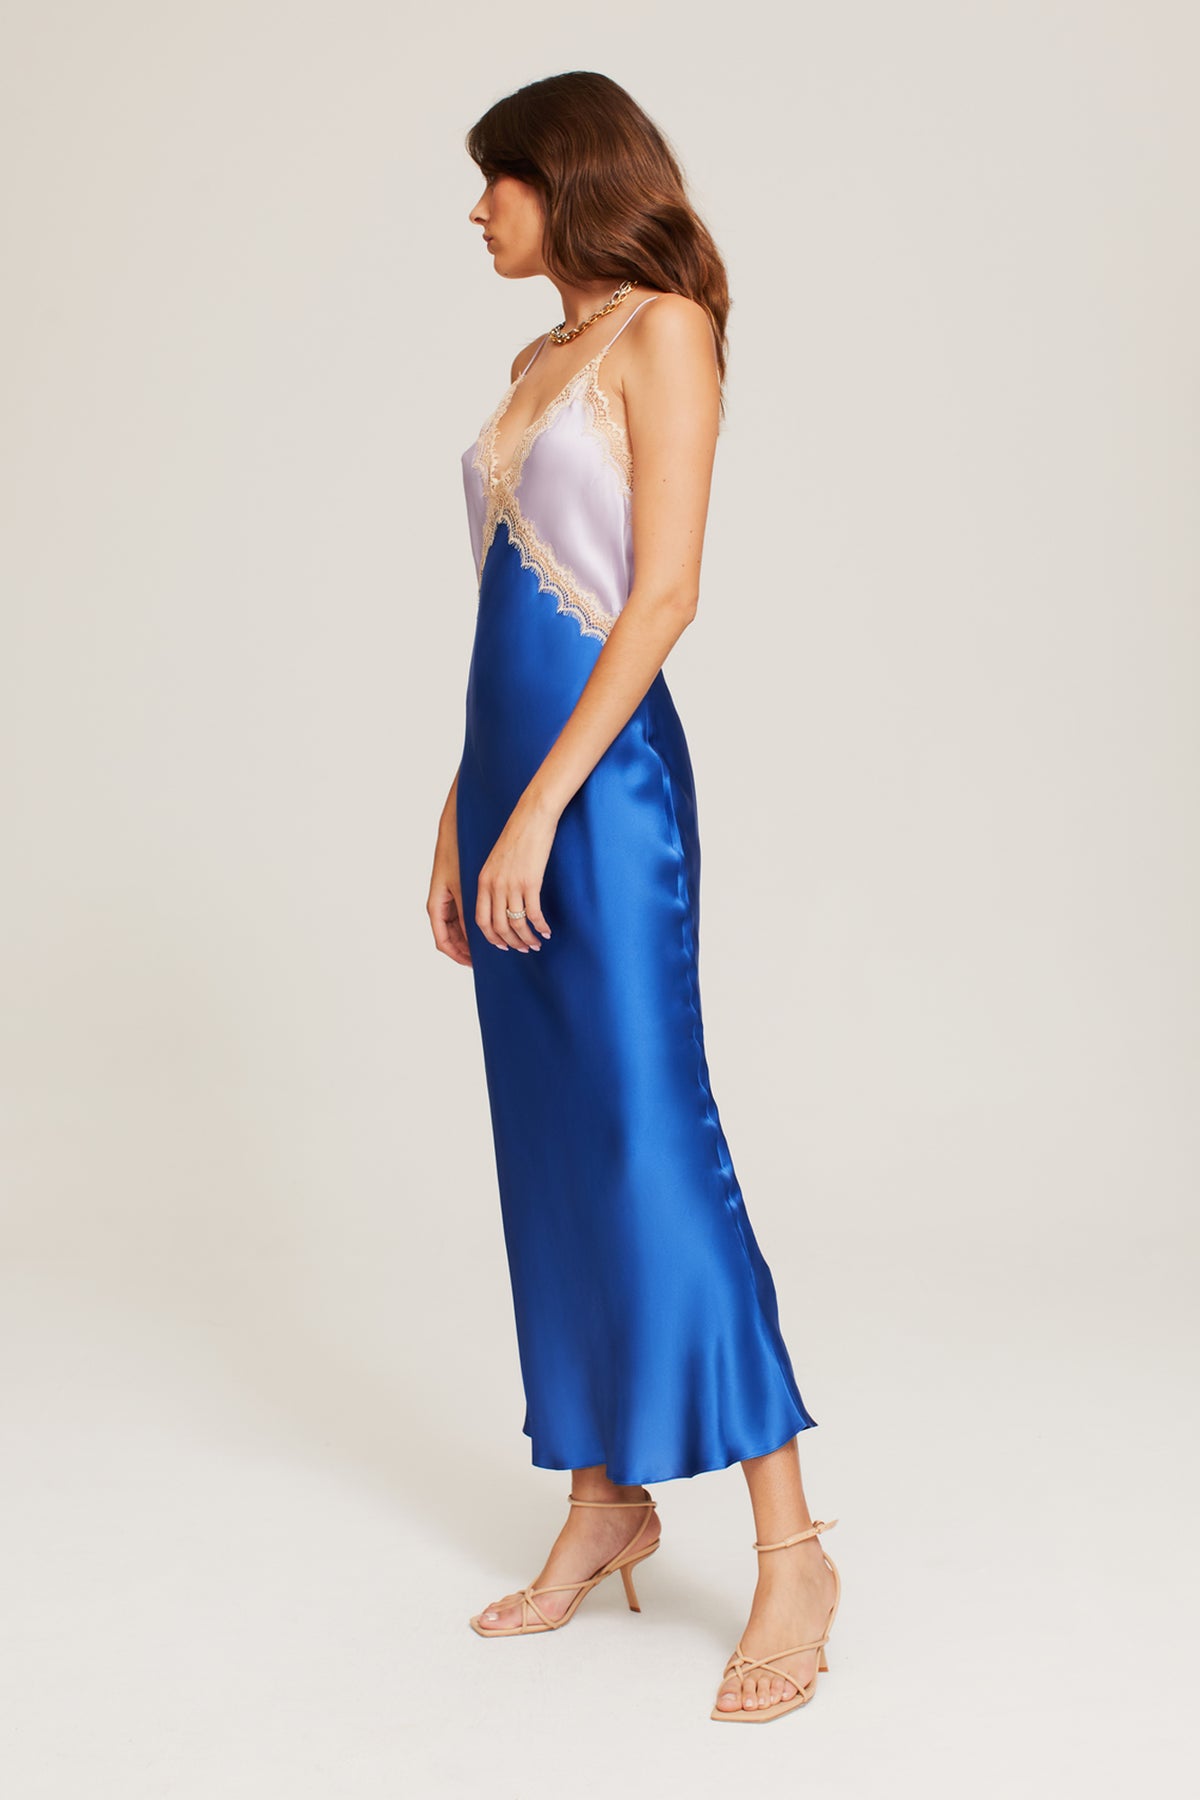 Sadie Dress in Lilac/Blue - 100% Silk | Ginia RTW